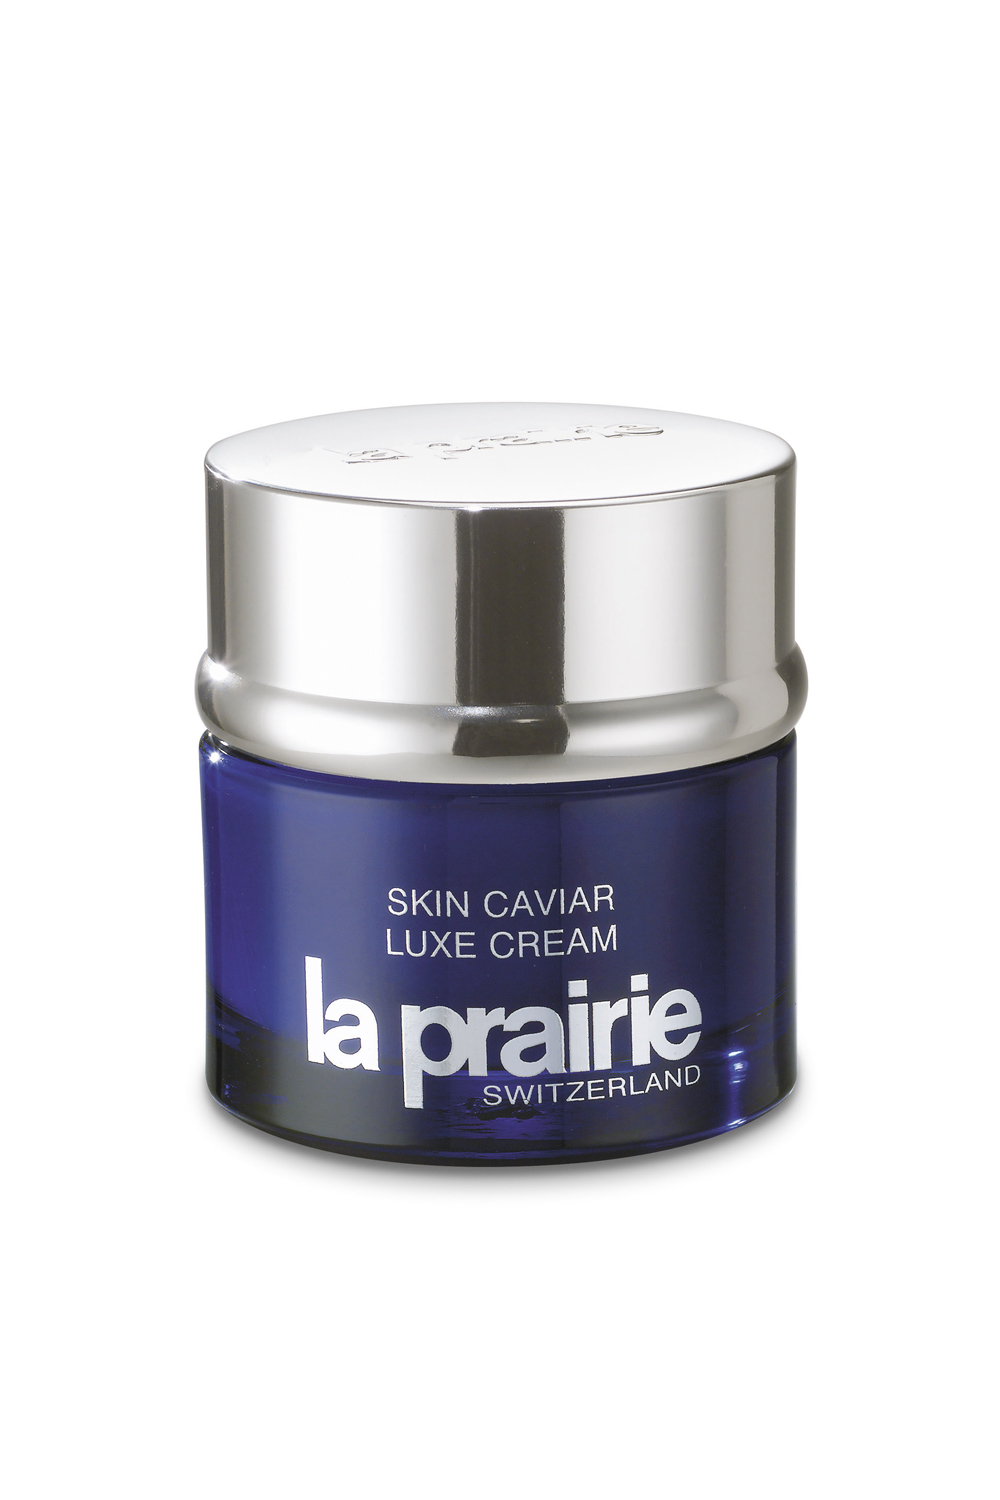 CRÈME DE LA CRÈME La Prairie Skin Caviar Luxe Cream, $620.